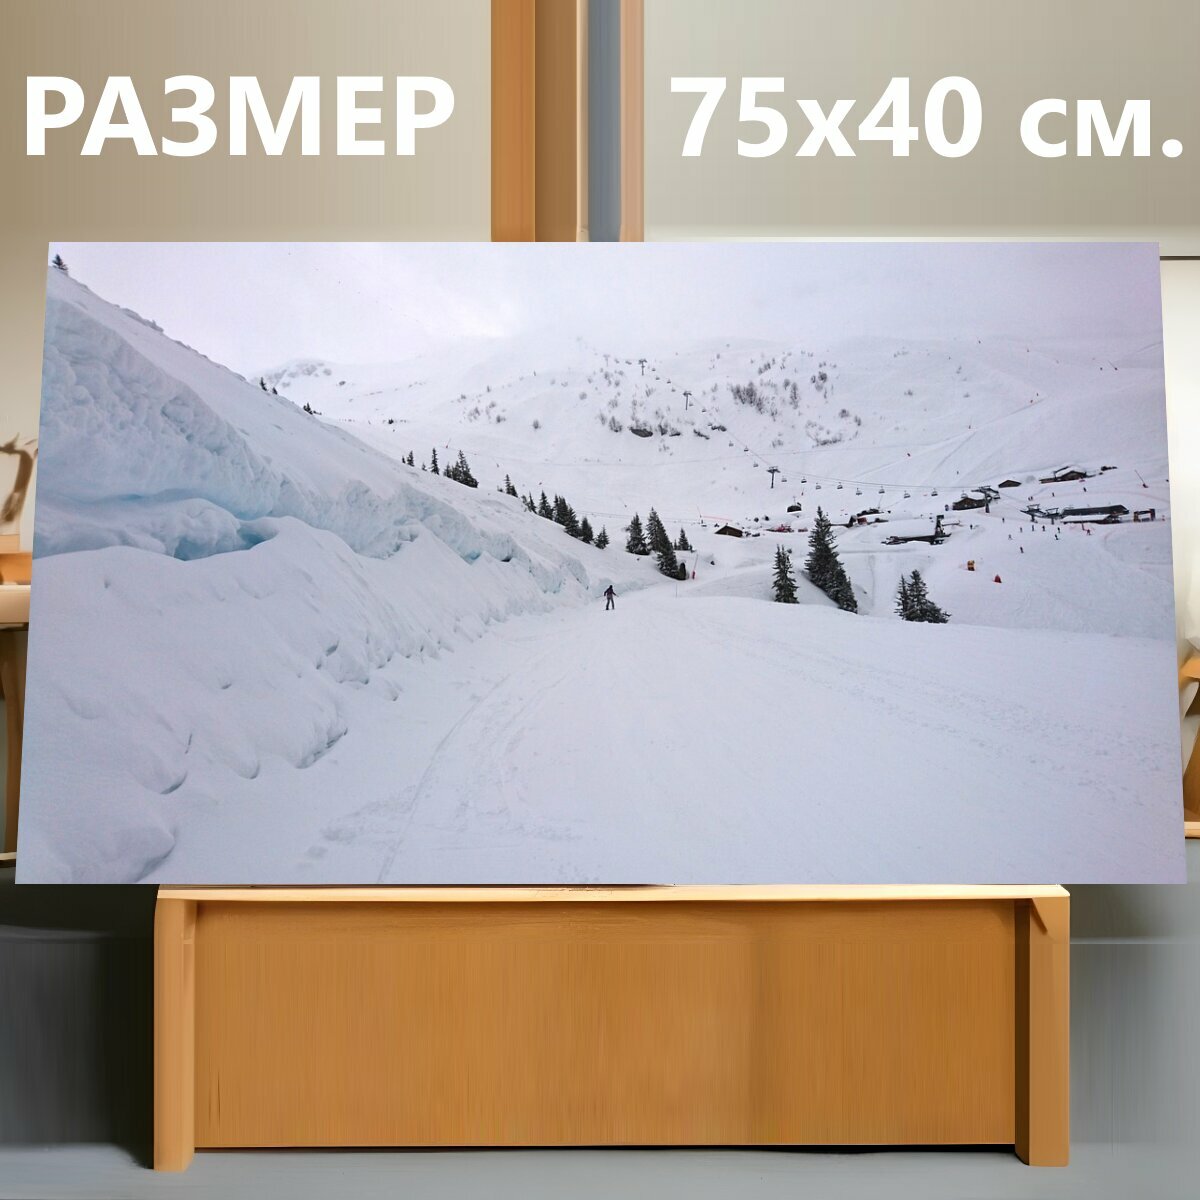 Картина на холсте "Гора, зимний вид спорта, кататься на лыжах" на подрамнике 75х40 см. для интерьера